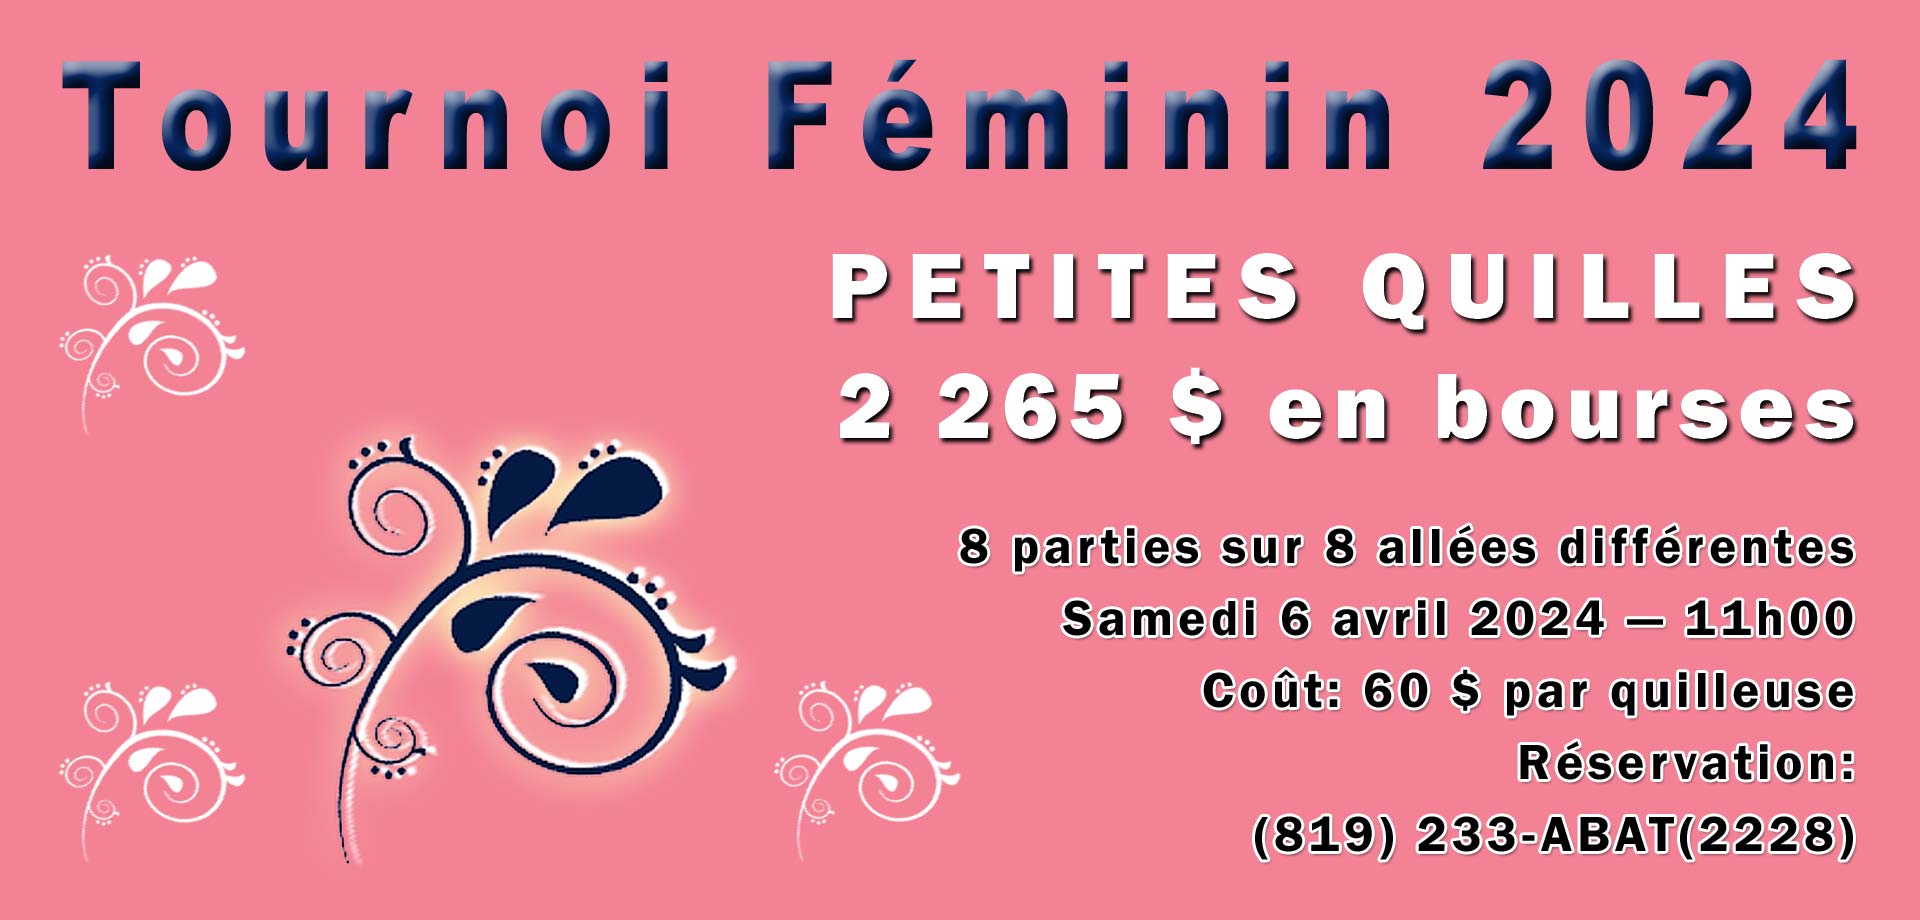 Tournoi Féminin 2024 Quilles St-Grégoire